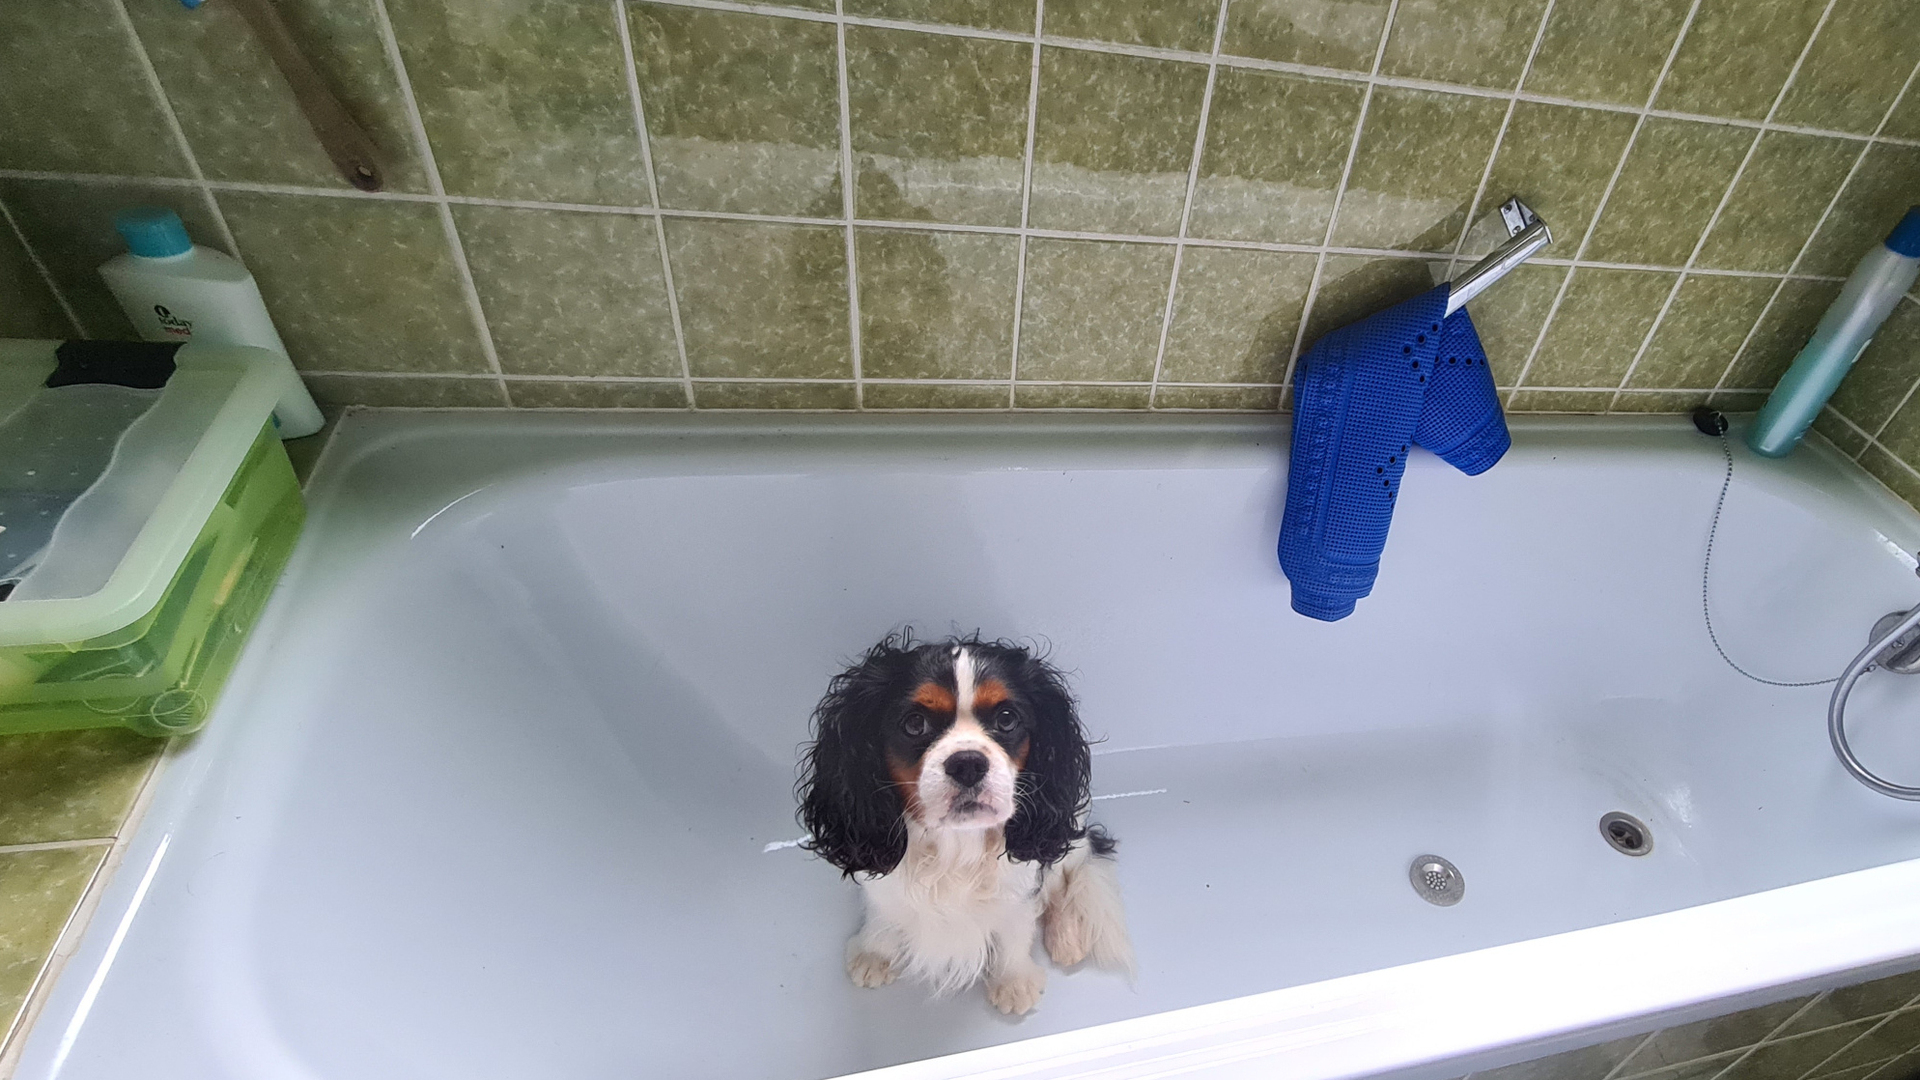 kleiner Hund sitzt in leerer Badewanne und schaut erwartungsvoll